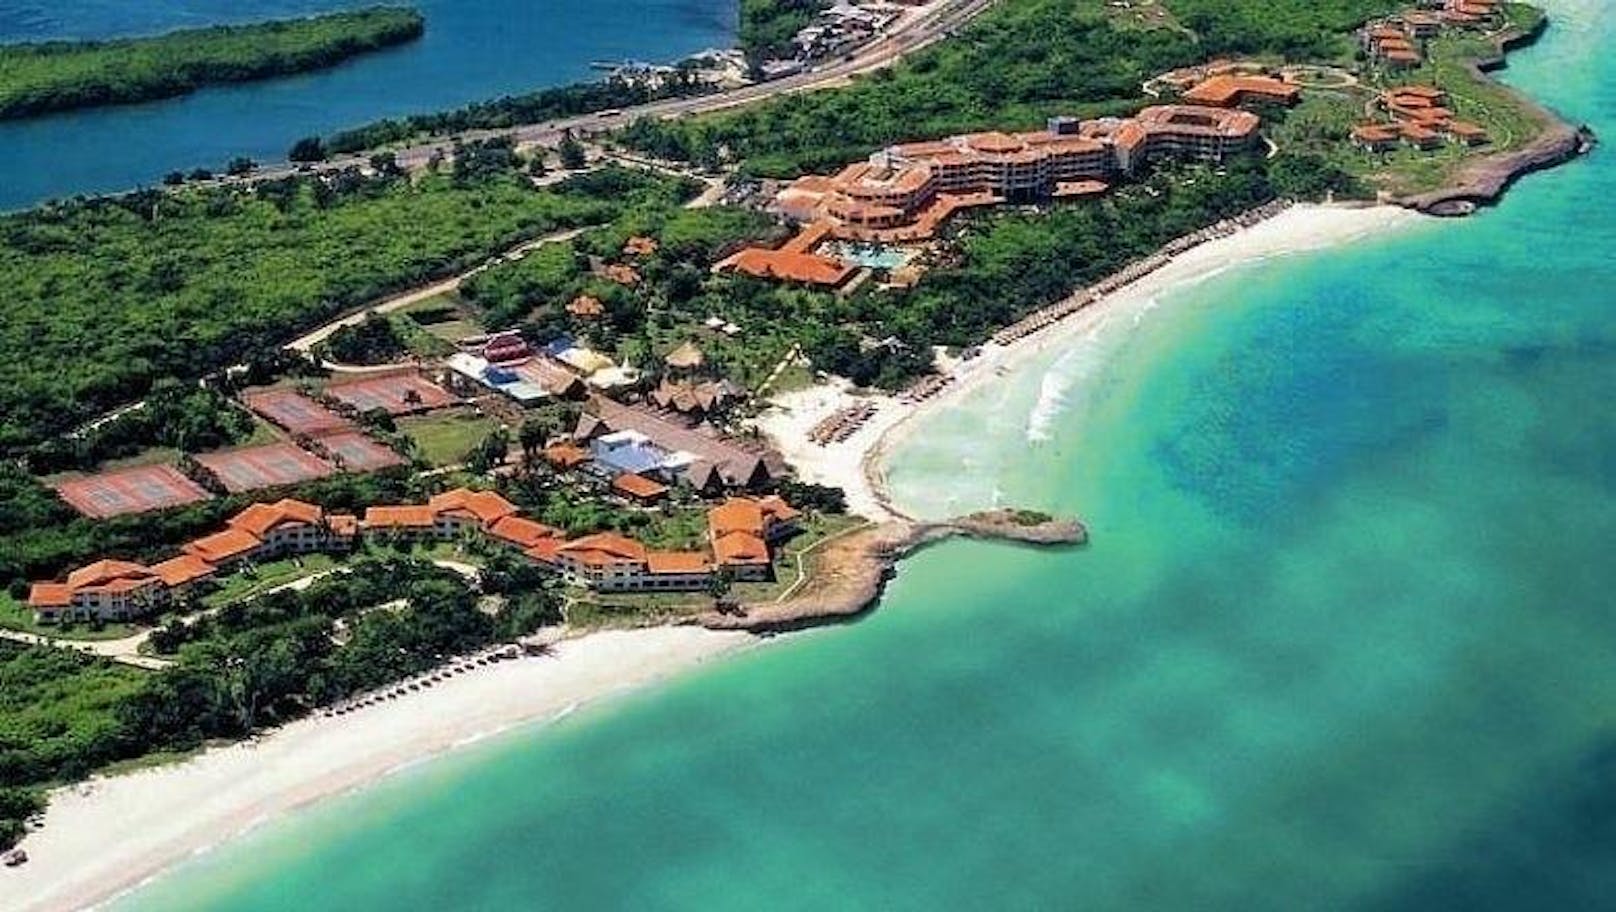 Kuba: Das Hotel Naviti Varadero liegt malerisch in einer Traumbucht. <a href="http://buchen.allesreise.at/?pagetype=reise&select=PO_2|ON_Y|BE_2,0,2|RA_13|RE_8939|KA_30%3E|AU_7:14|PR_150:5000|DE_2017-11-1%3E|RT_2018-3-31%3C|AB_VIE|VA_15&portal=2">Hier geht's zum Angebot!</a>